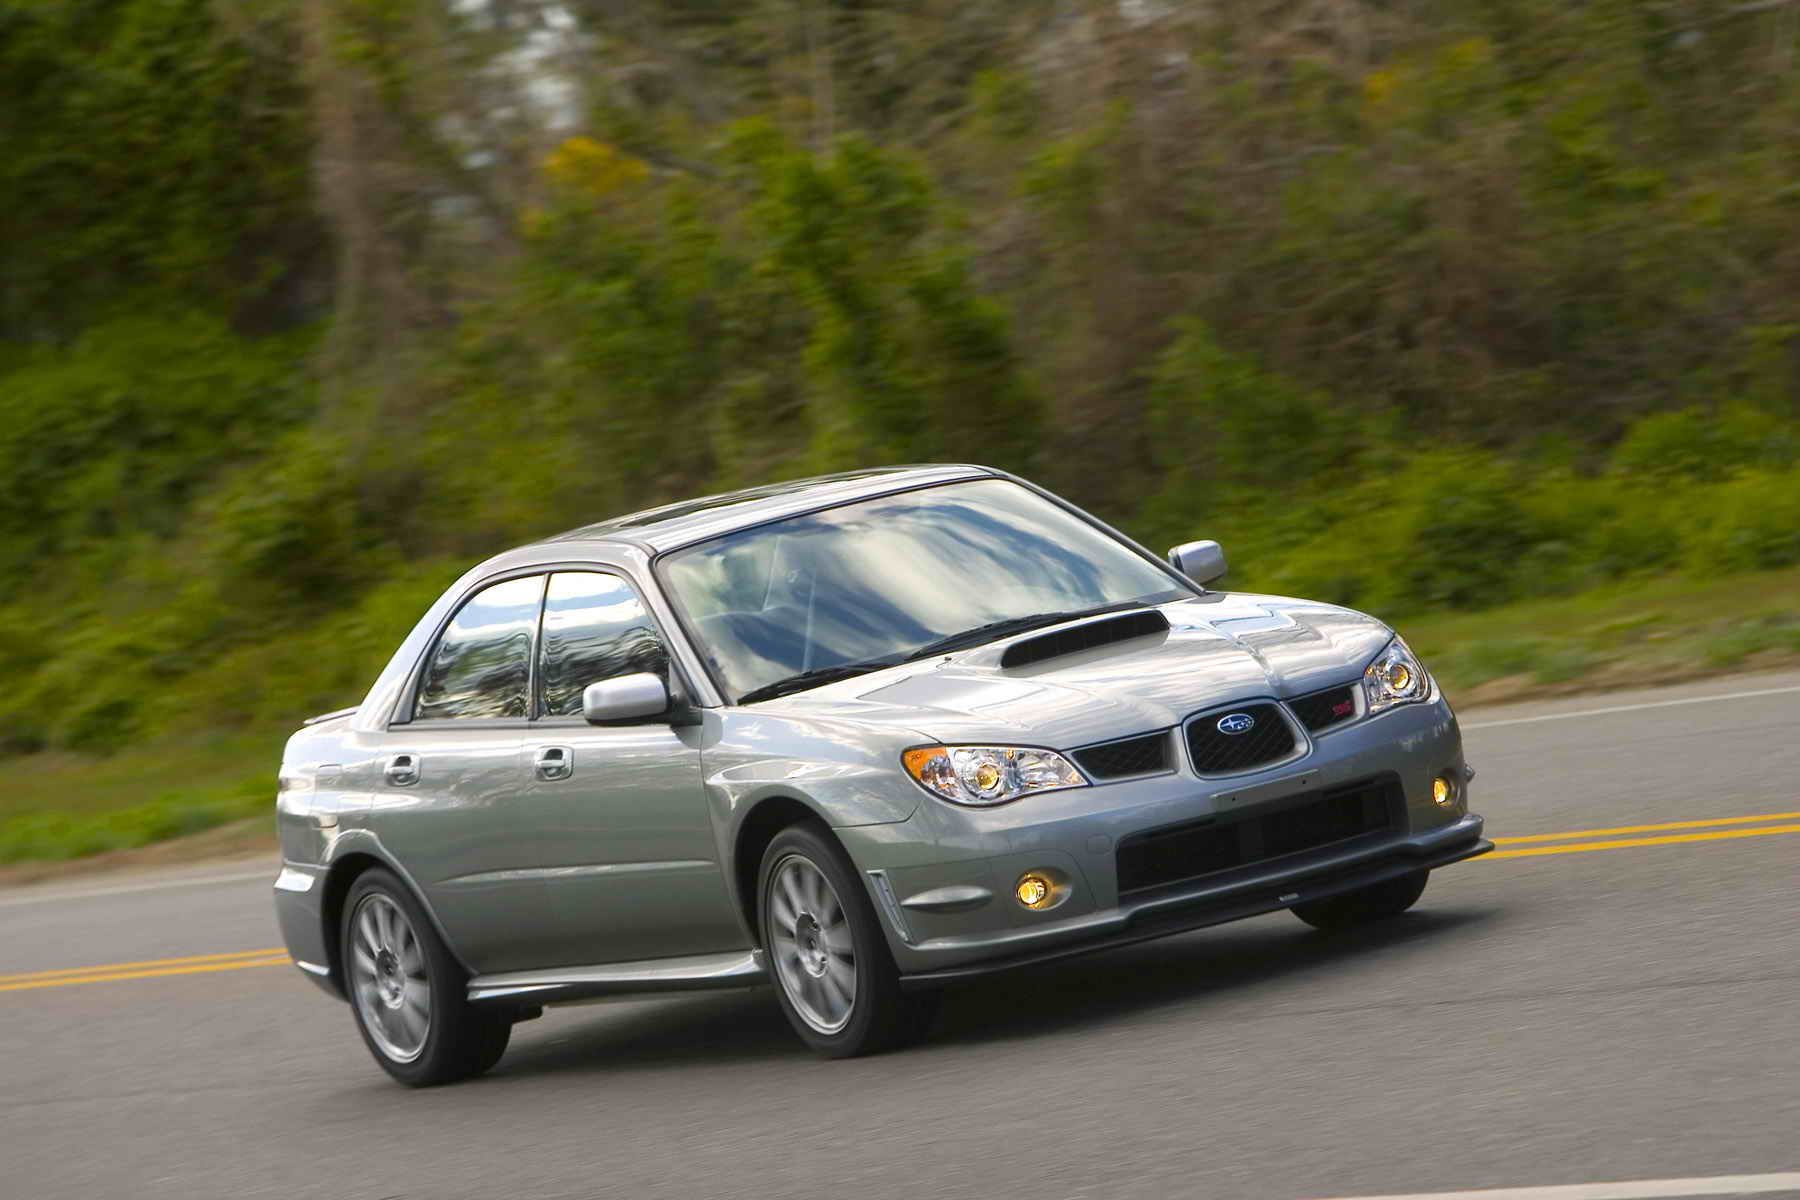 2007 Subaru Impreza WRX STI Limited